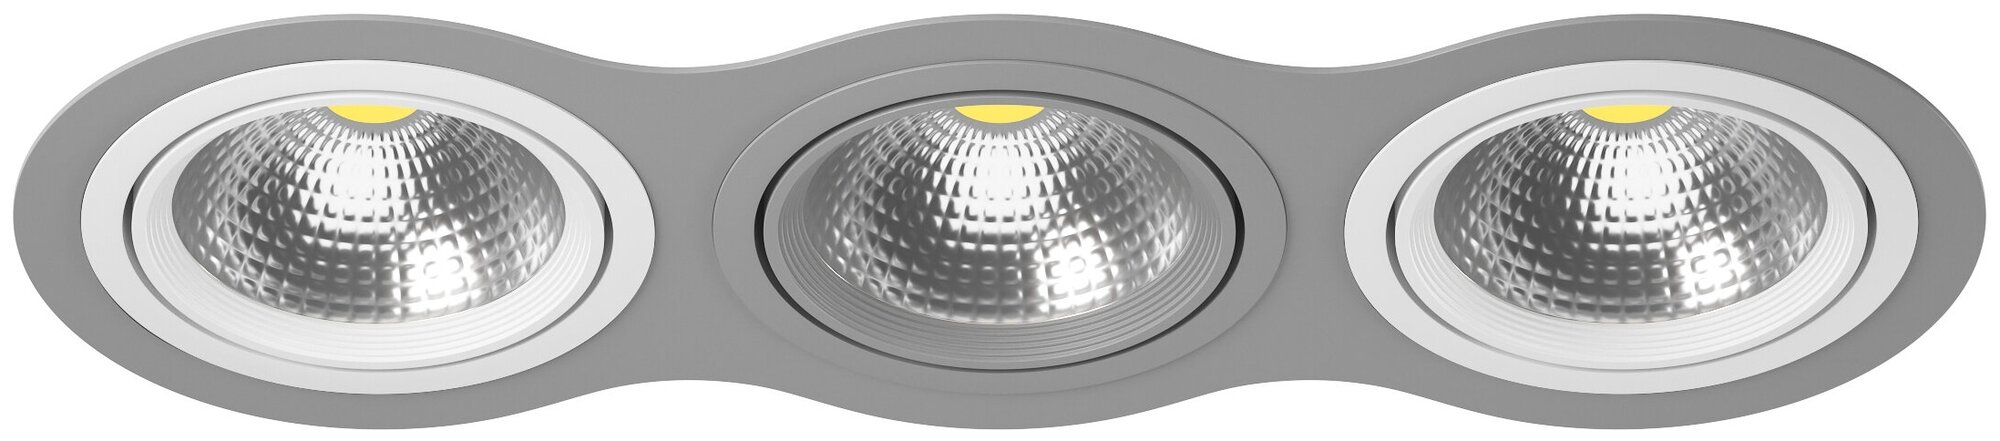 Точечный светильник встроенный серый Lightstar Intero 111 i939060906